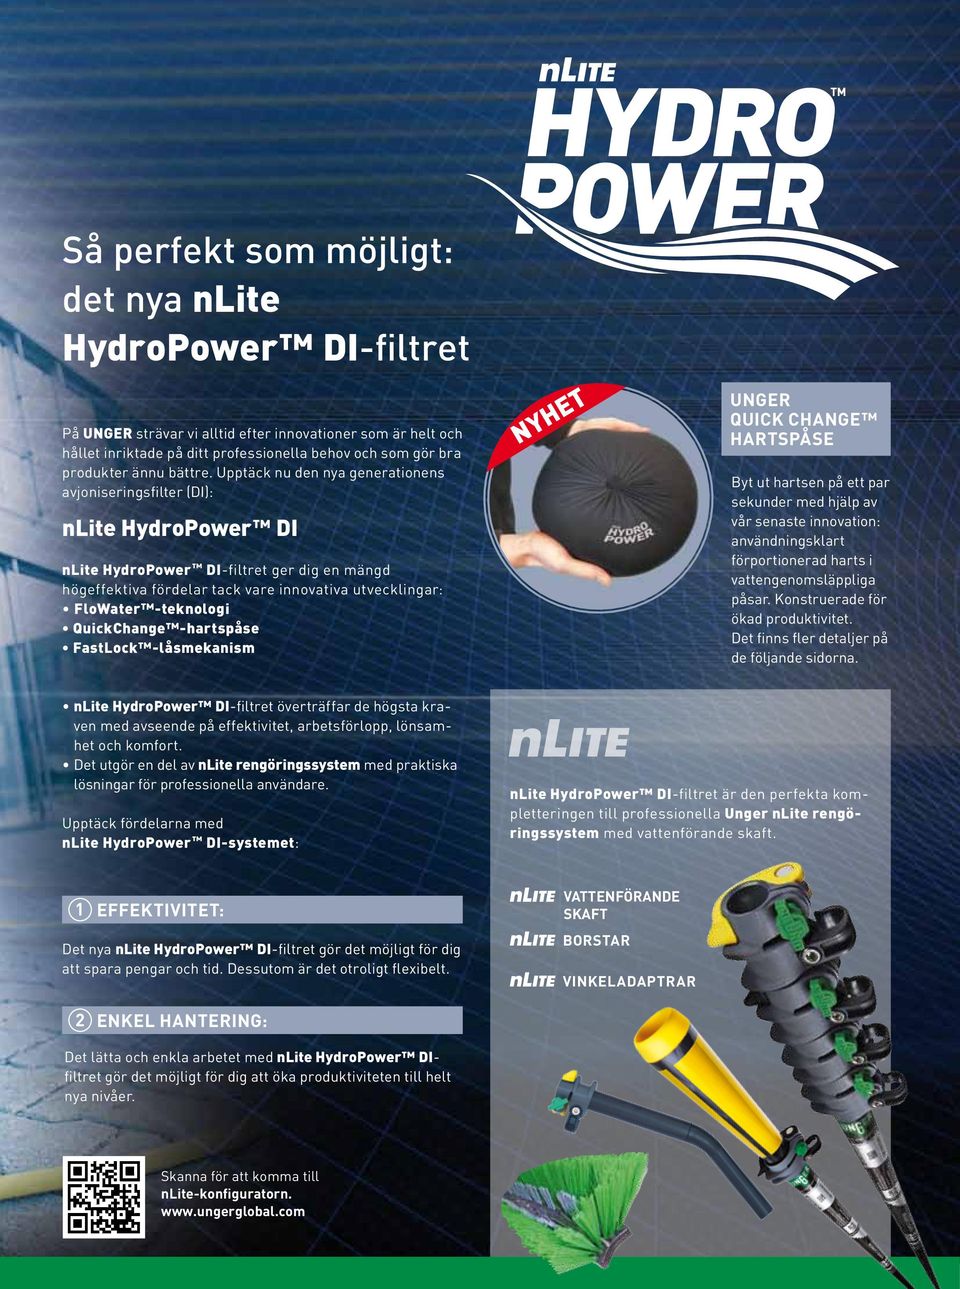 Upptäck nu den nya generationens avjoniseringsfilter (DI): nlite HydroPower DI nlite HydroPower DI-filtret ger dig en mängd högeffektiva fördelar tack vare innovativa utvecklingar: FloWater